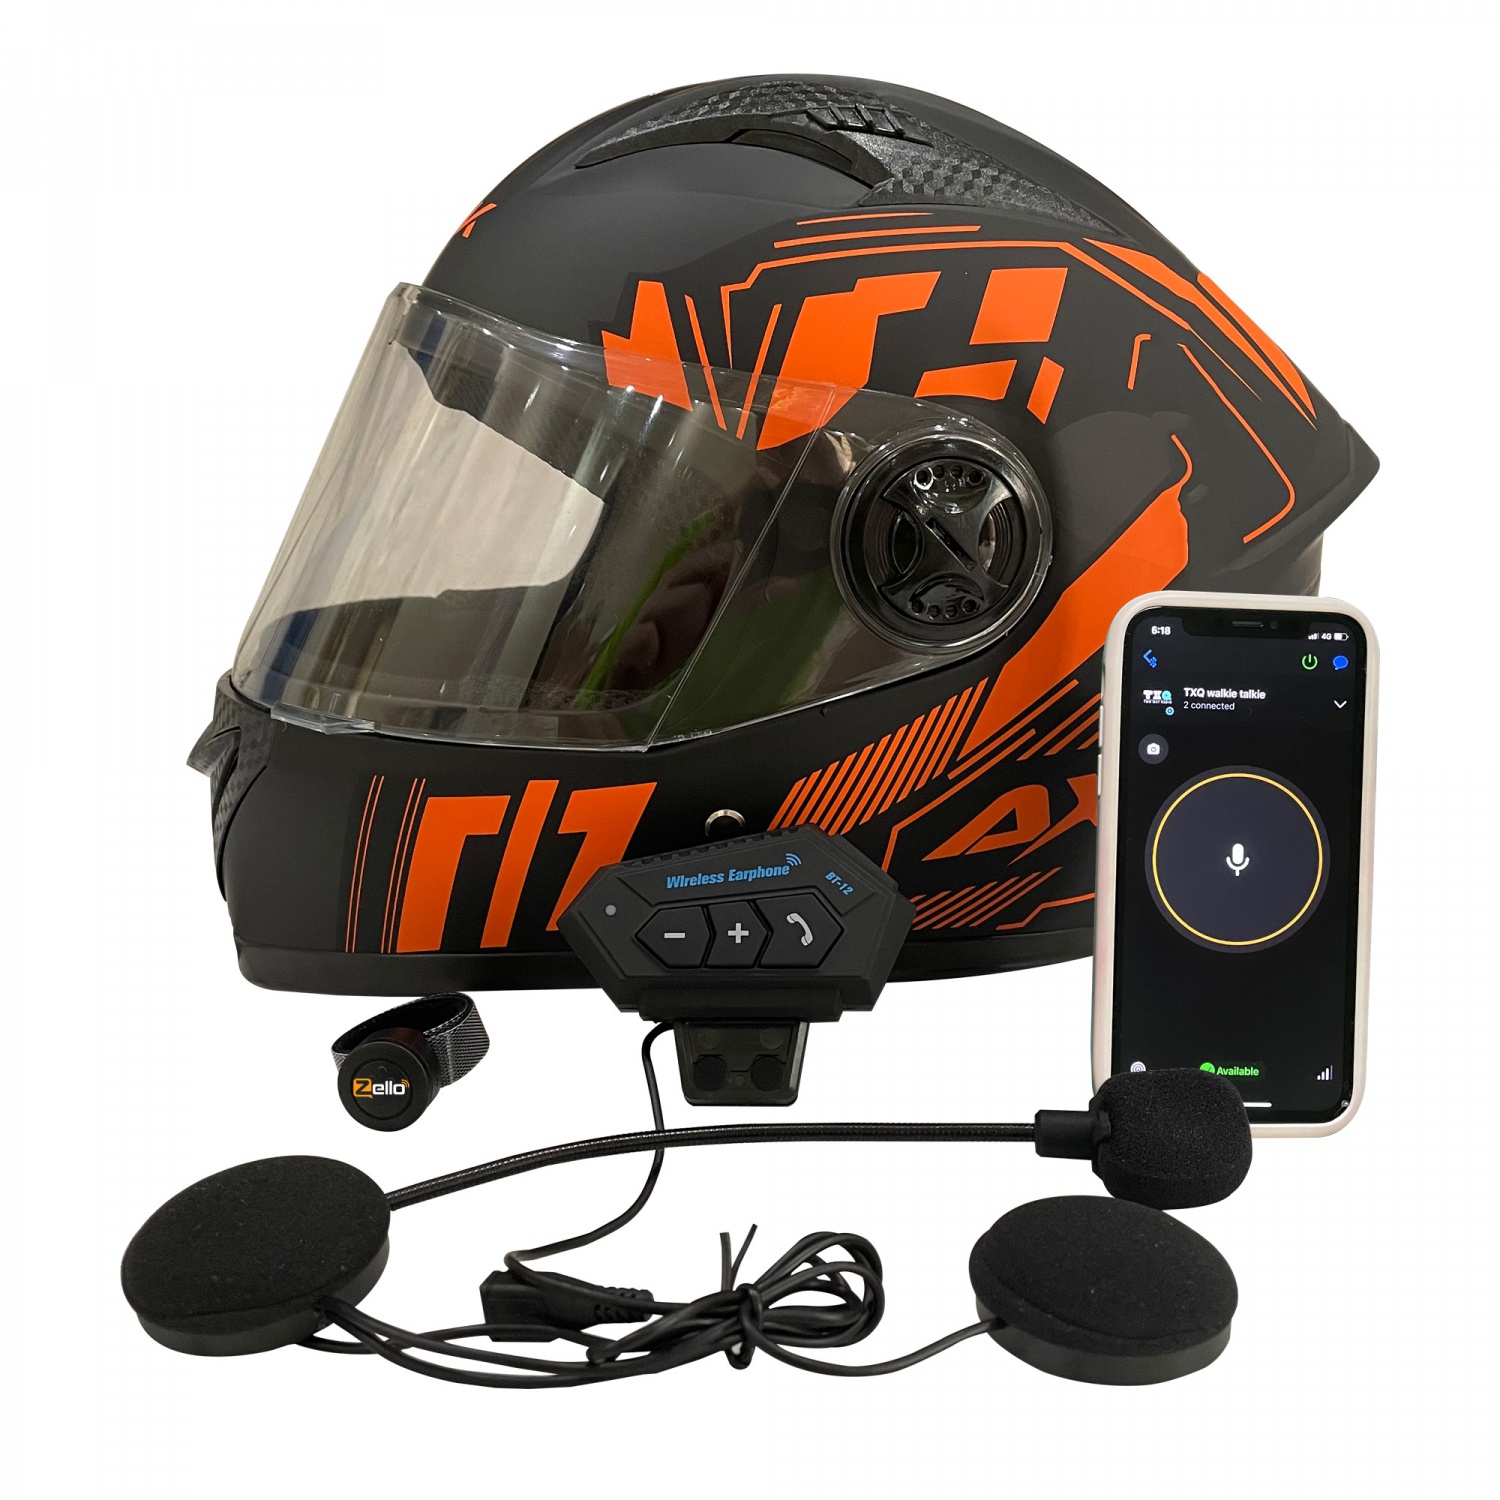 Zwart Ontslag nemen zwaartekracht TXQ HB2 Zello bluetooth helmet wireless headset ptt radio motorcycle  bicycle communicate two way rad